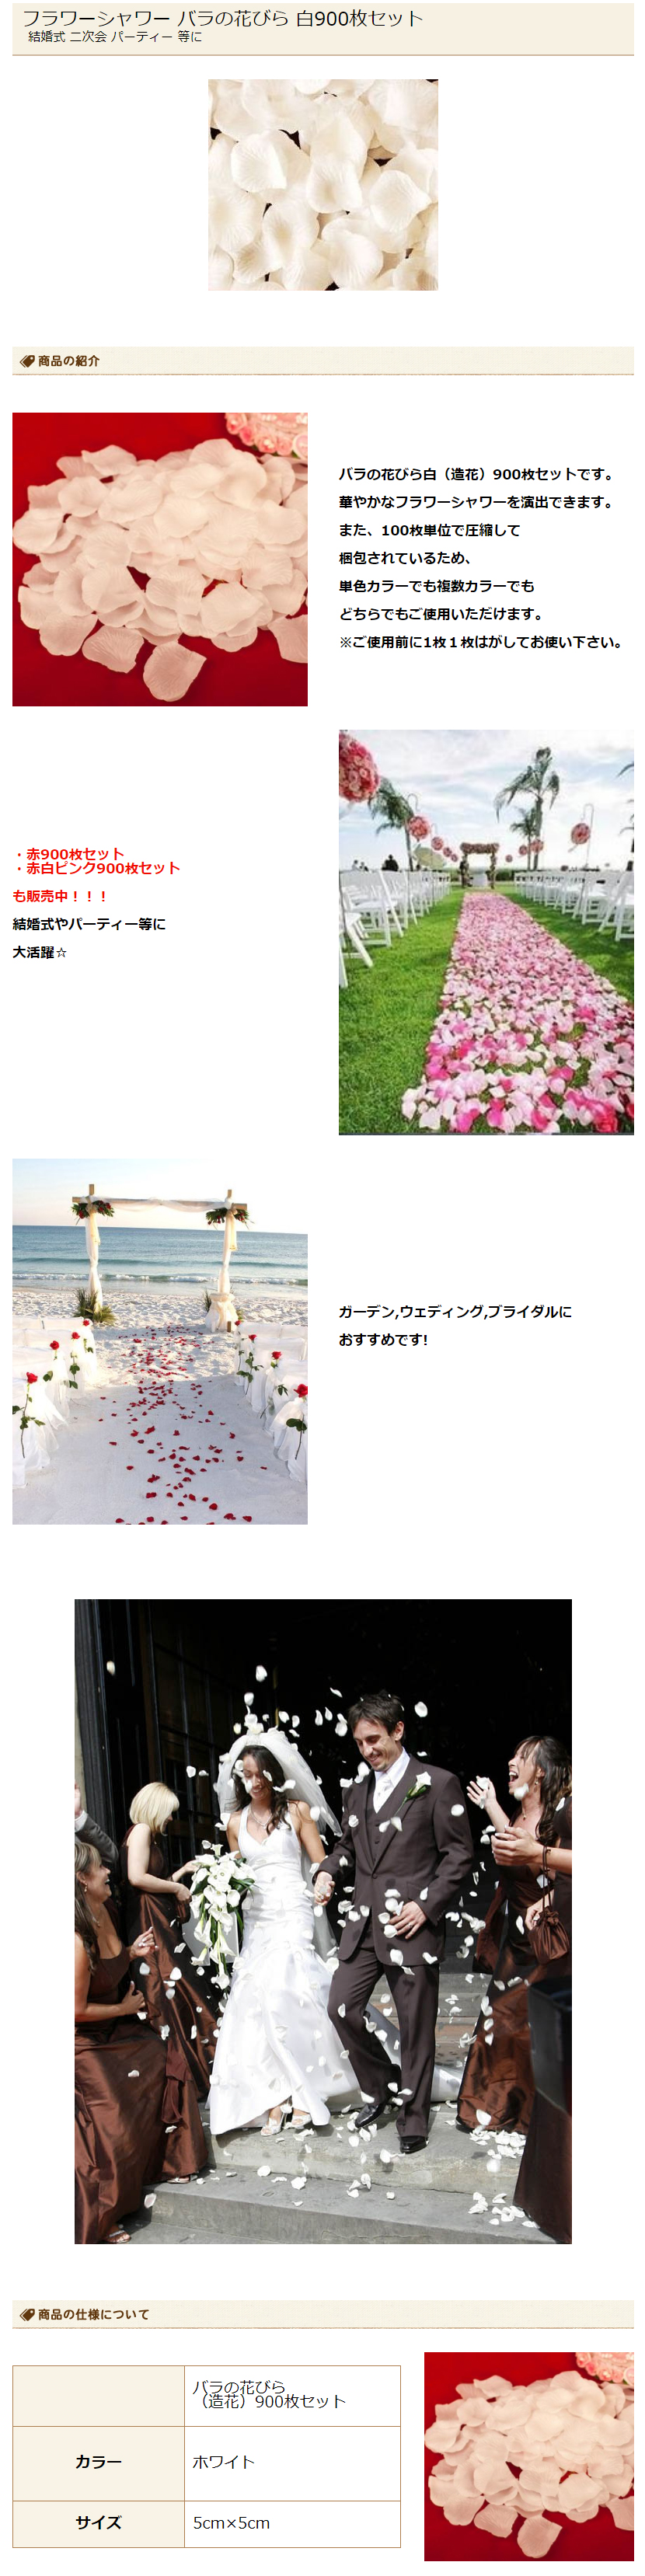 フラワーシャワー ウエディング お祝い 結婚式 赤 花びら 造花 誕生日 通販